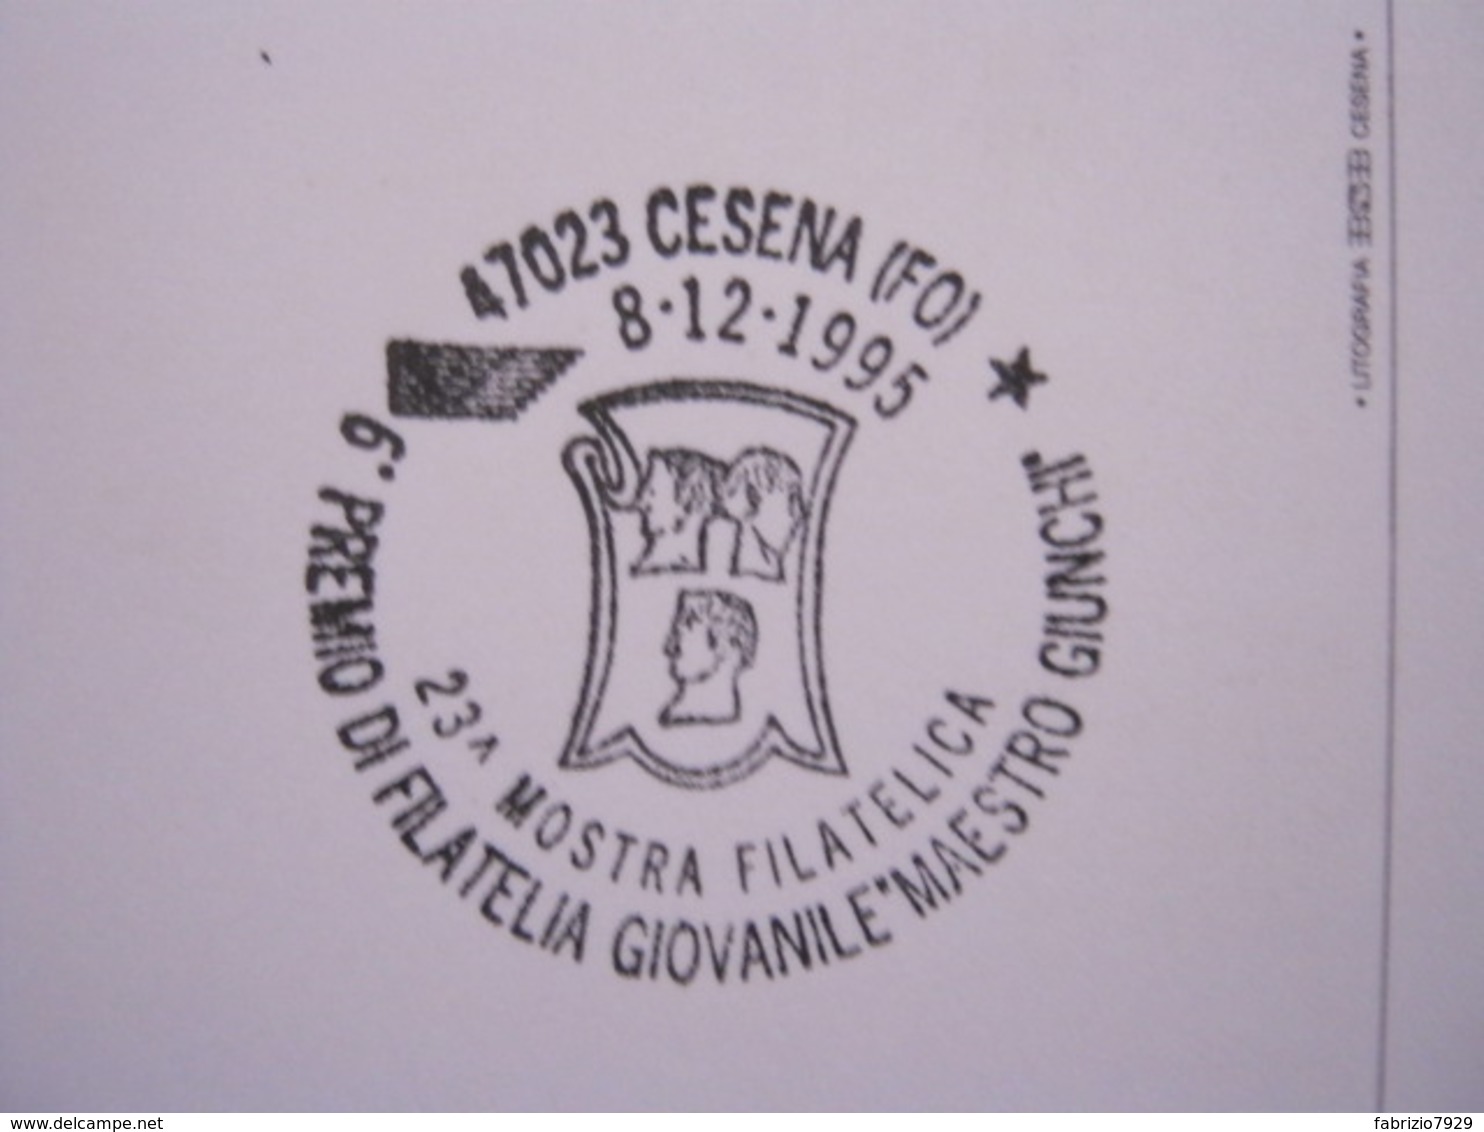 A.13 ITALIA ANNULLO 1995 CESENA FORLI STEMMA ARALDICO TRE TESTE MALATESTA MOSTRA FILATELIA GIOVANILE GIUNCHI FR. BOBINA - Stamps